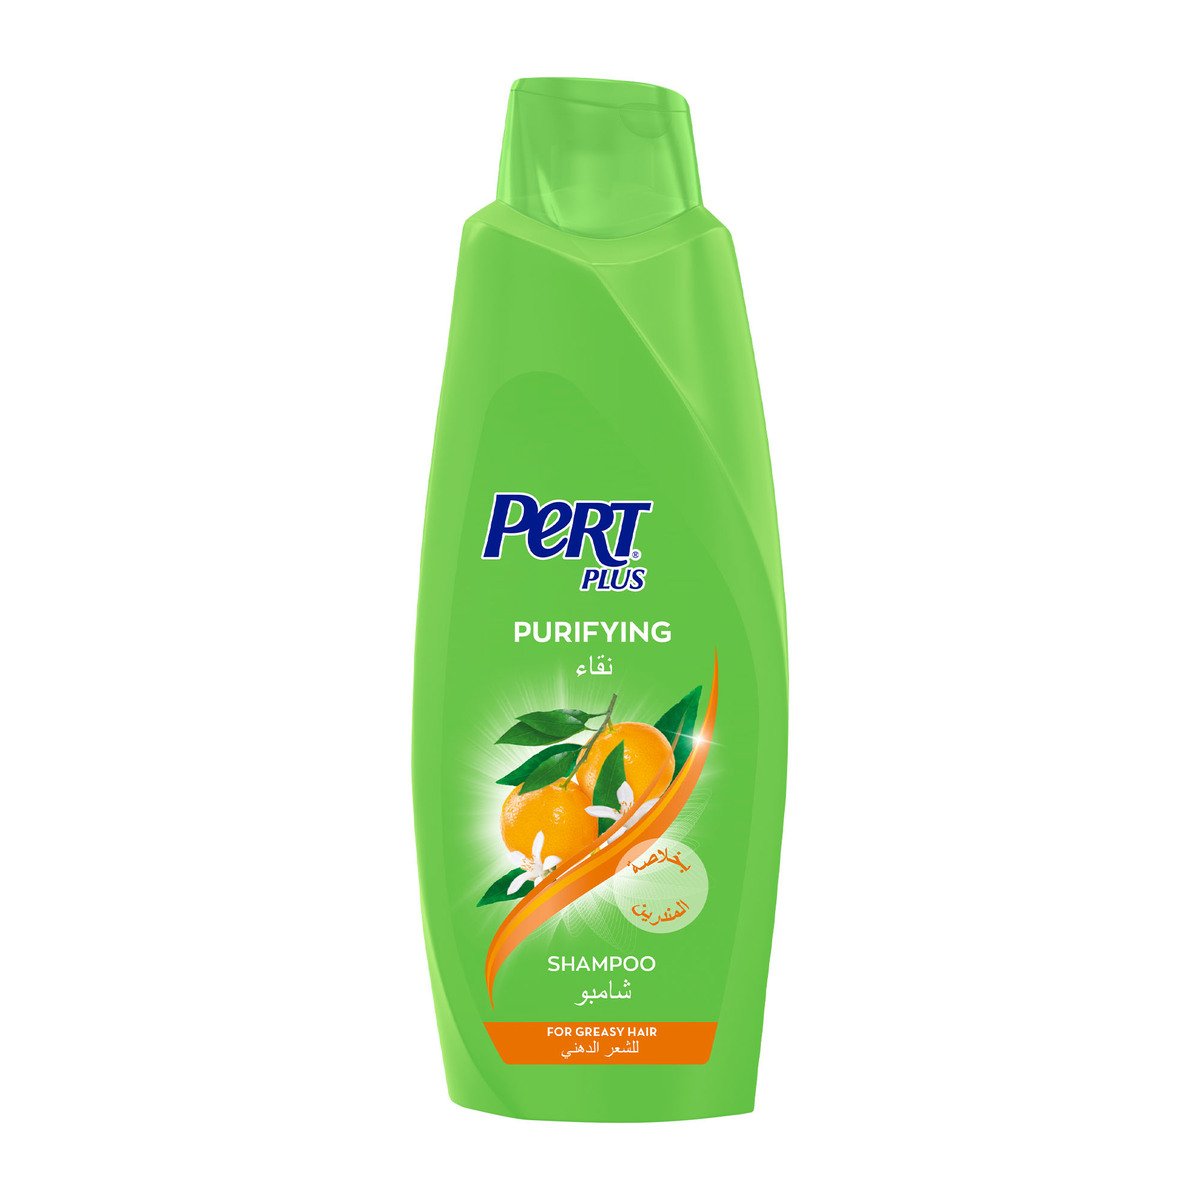 اشتري قم بشراء بيرت بلس شامبو بخلاصة الماندرين 600 مل Online at Best Price من الموقع - من لولو هايبر ماركت Shampoo في السعودية